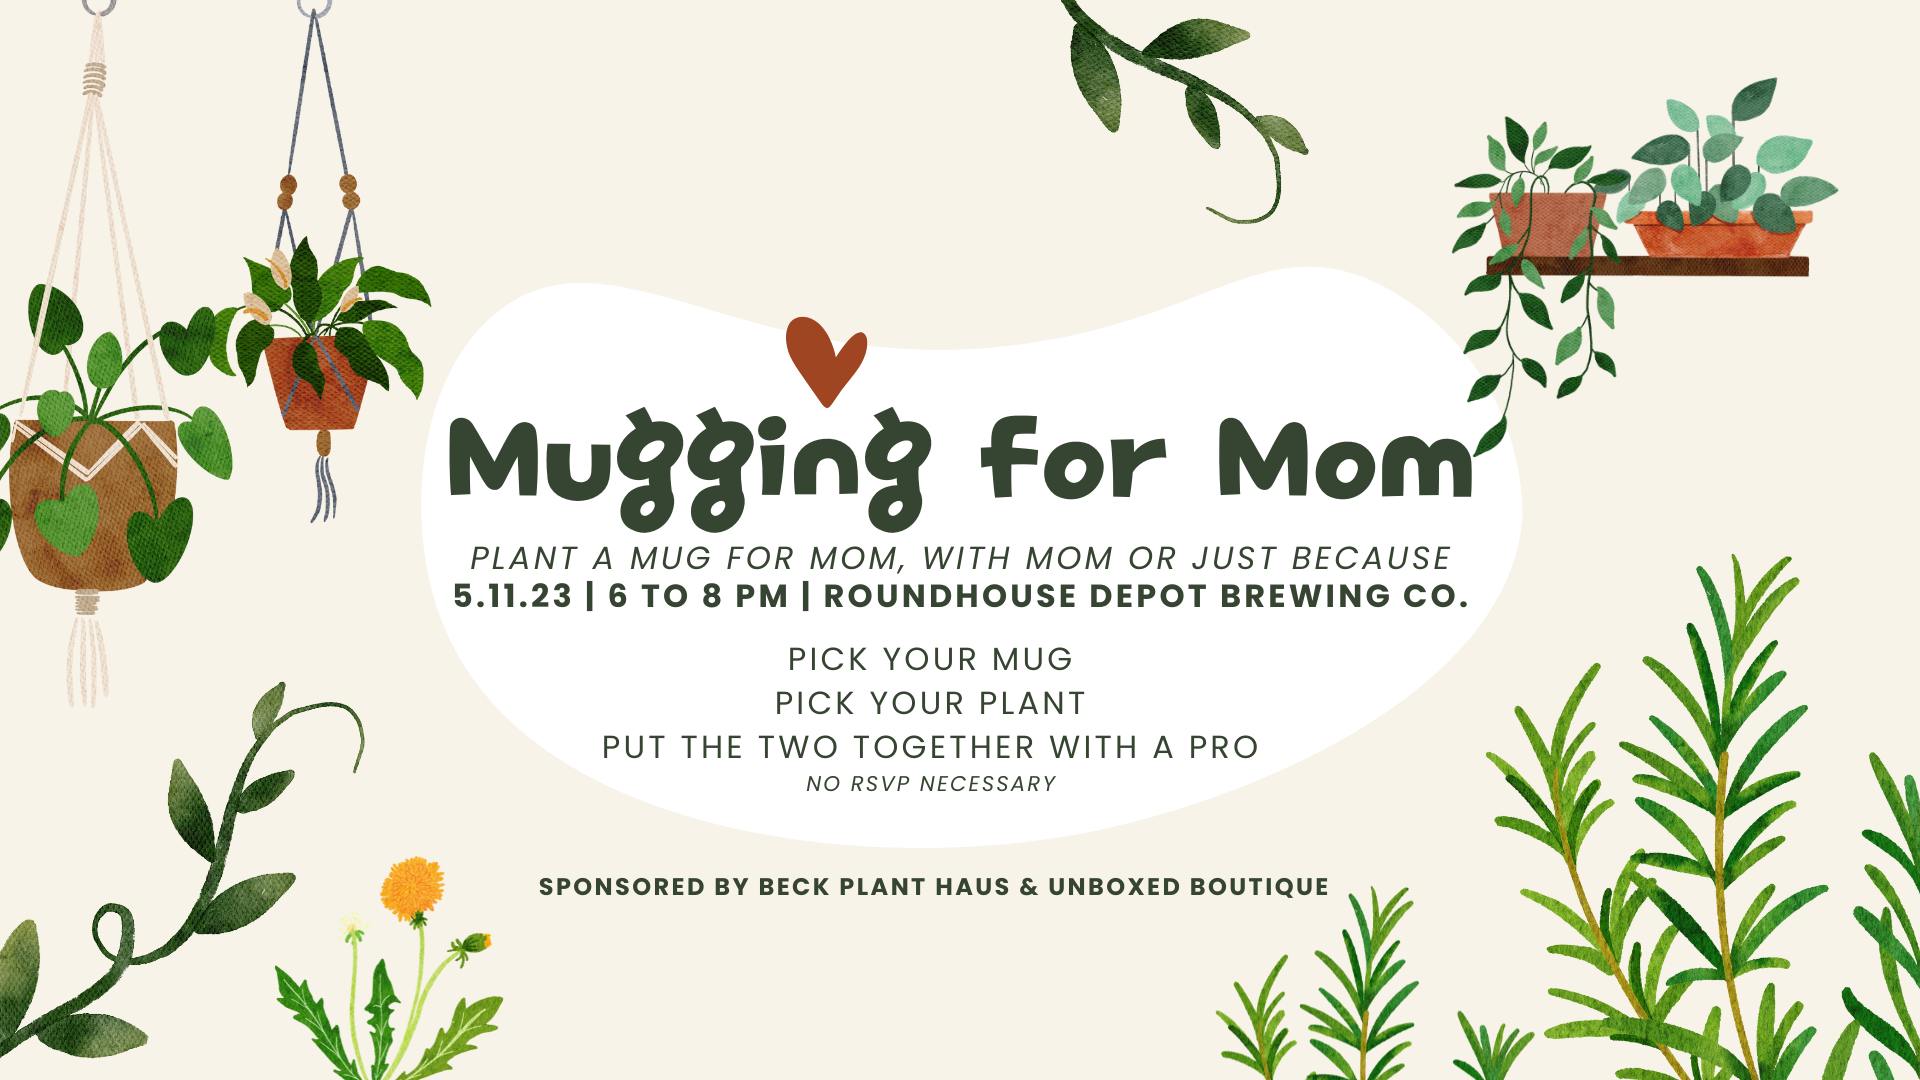 Ready to Mug for Mom?